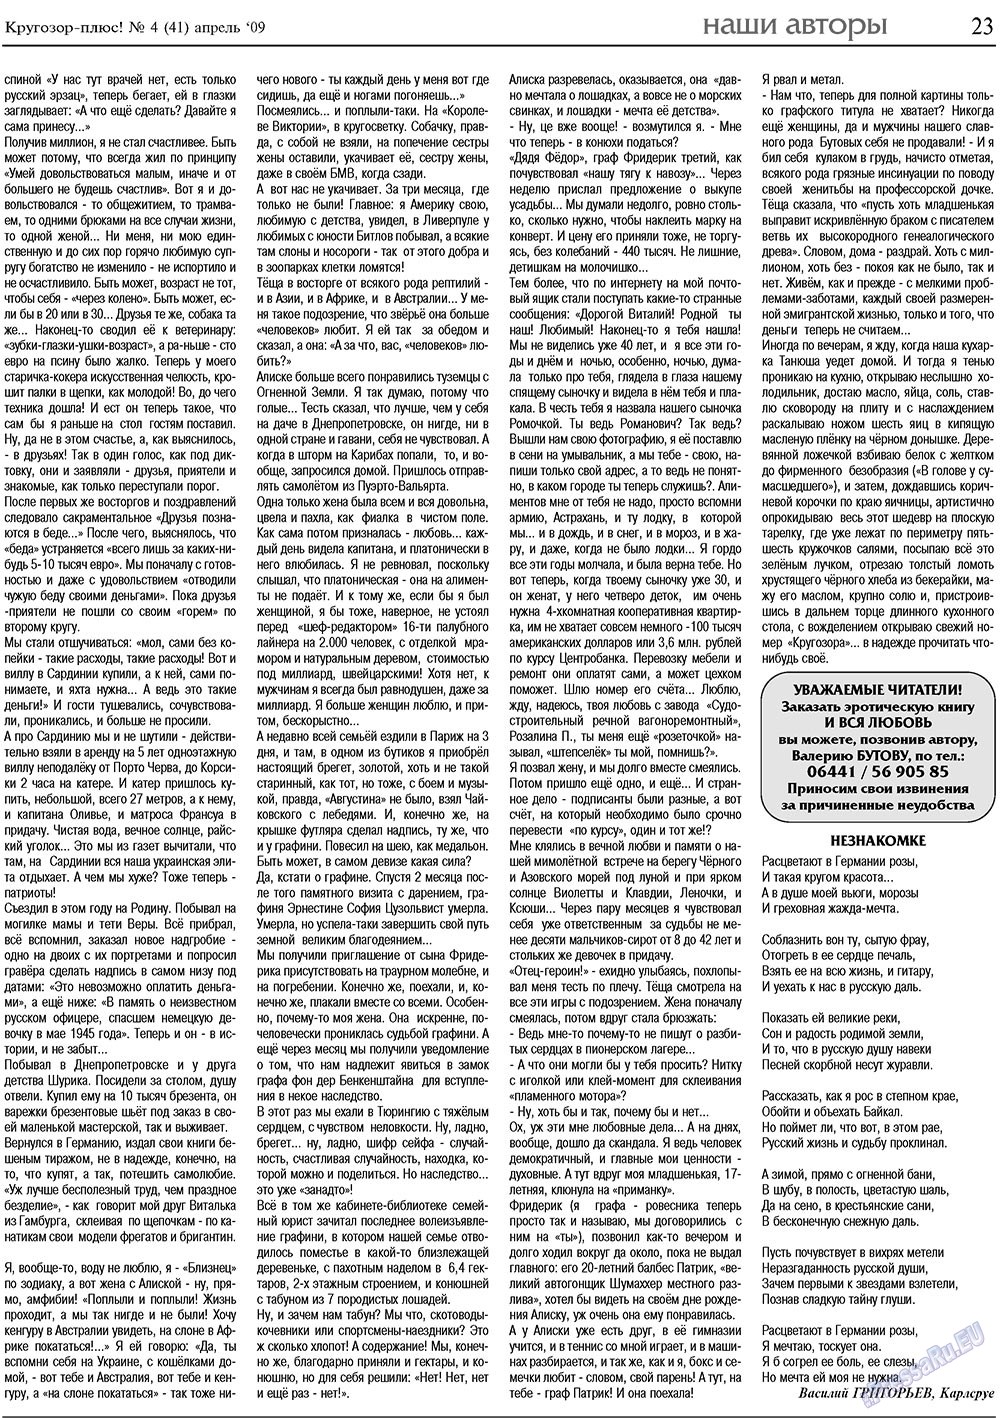 Кругозор плюс!, газета. 2009 №4 стр.23